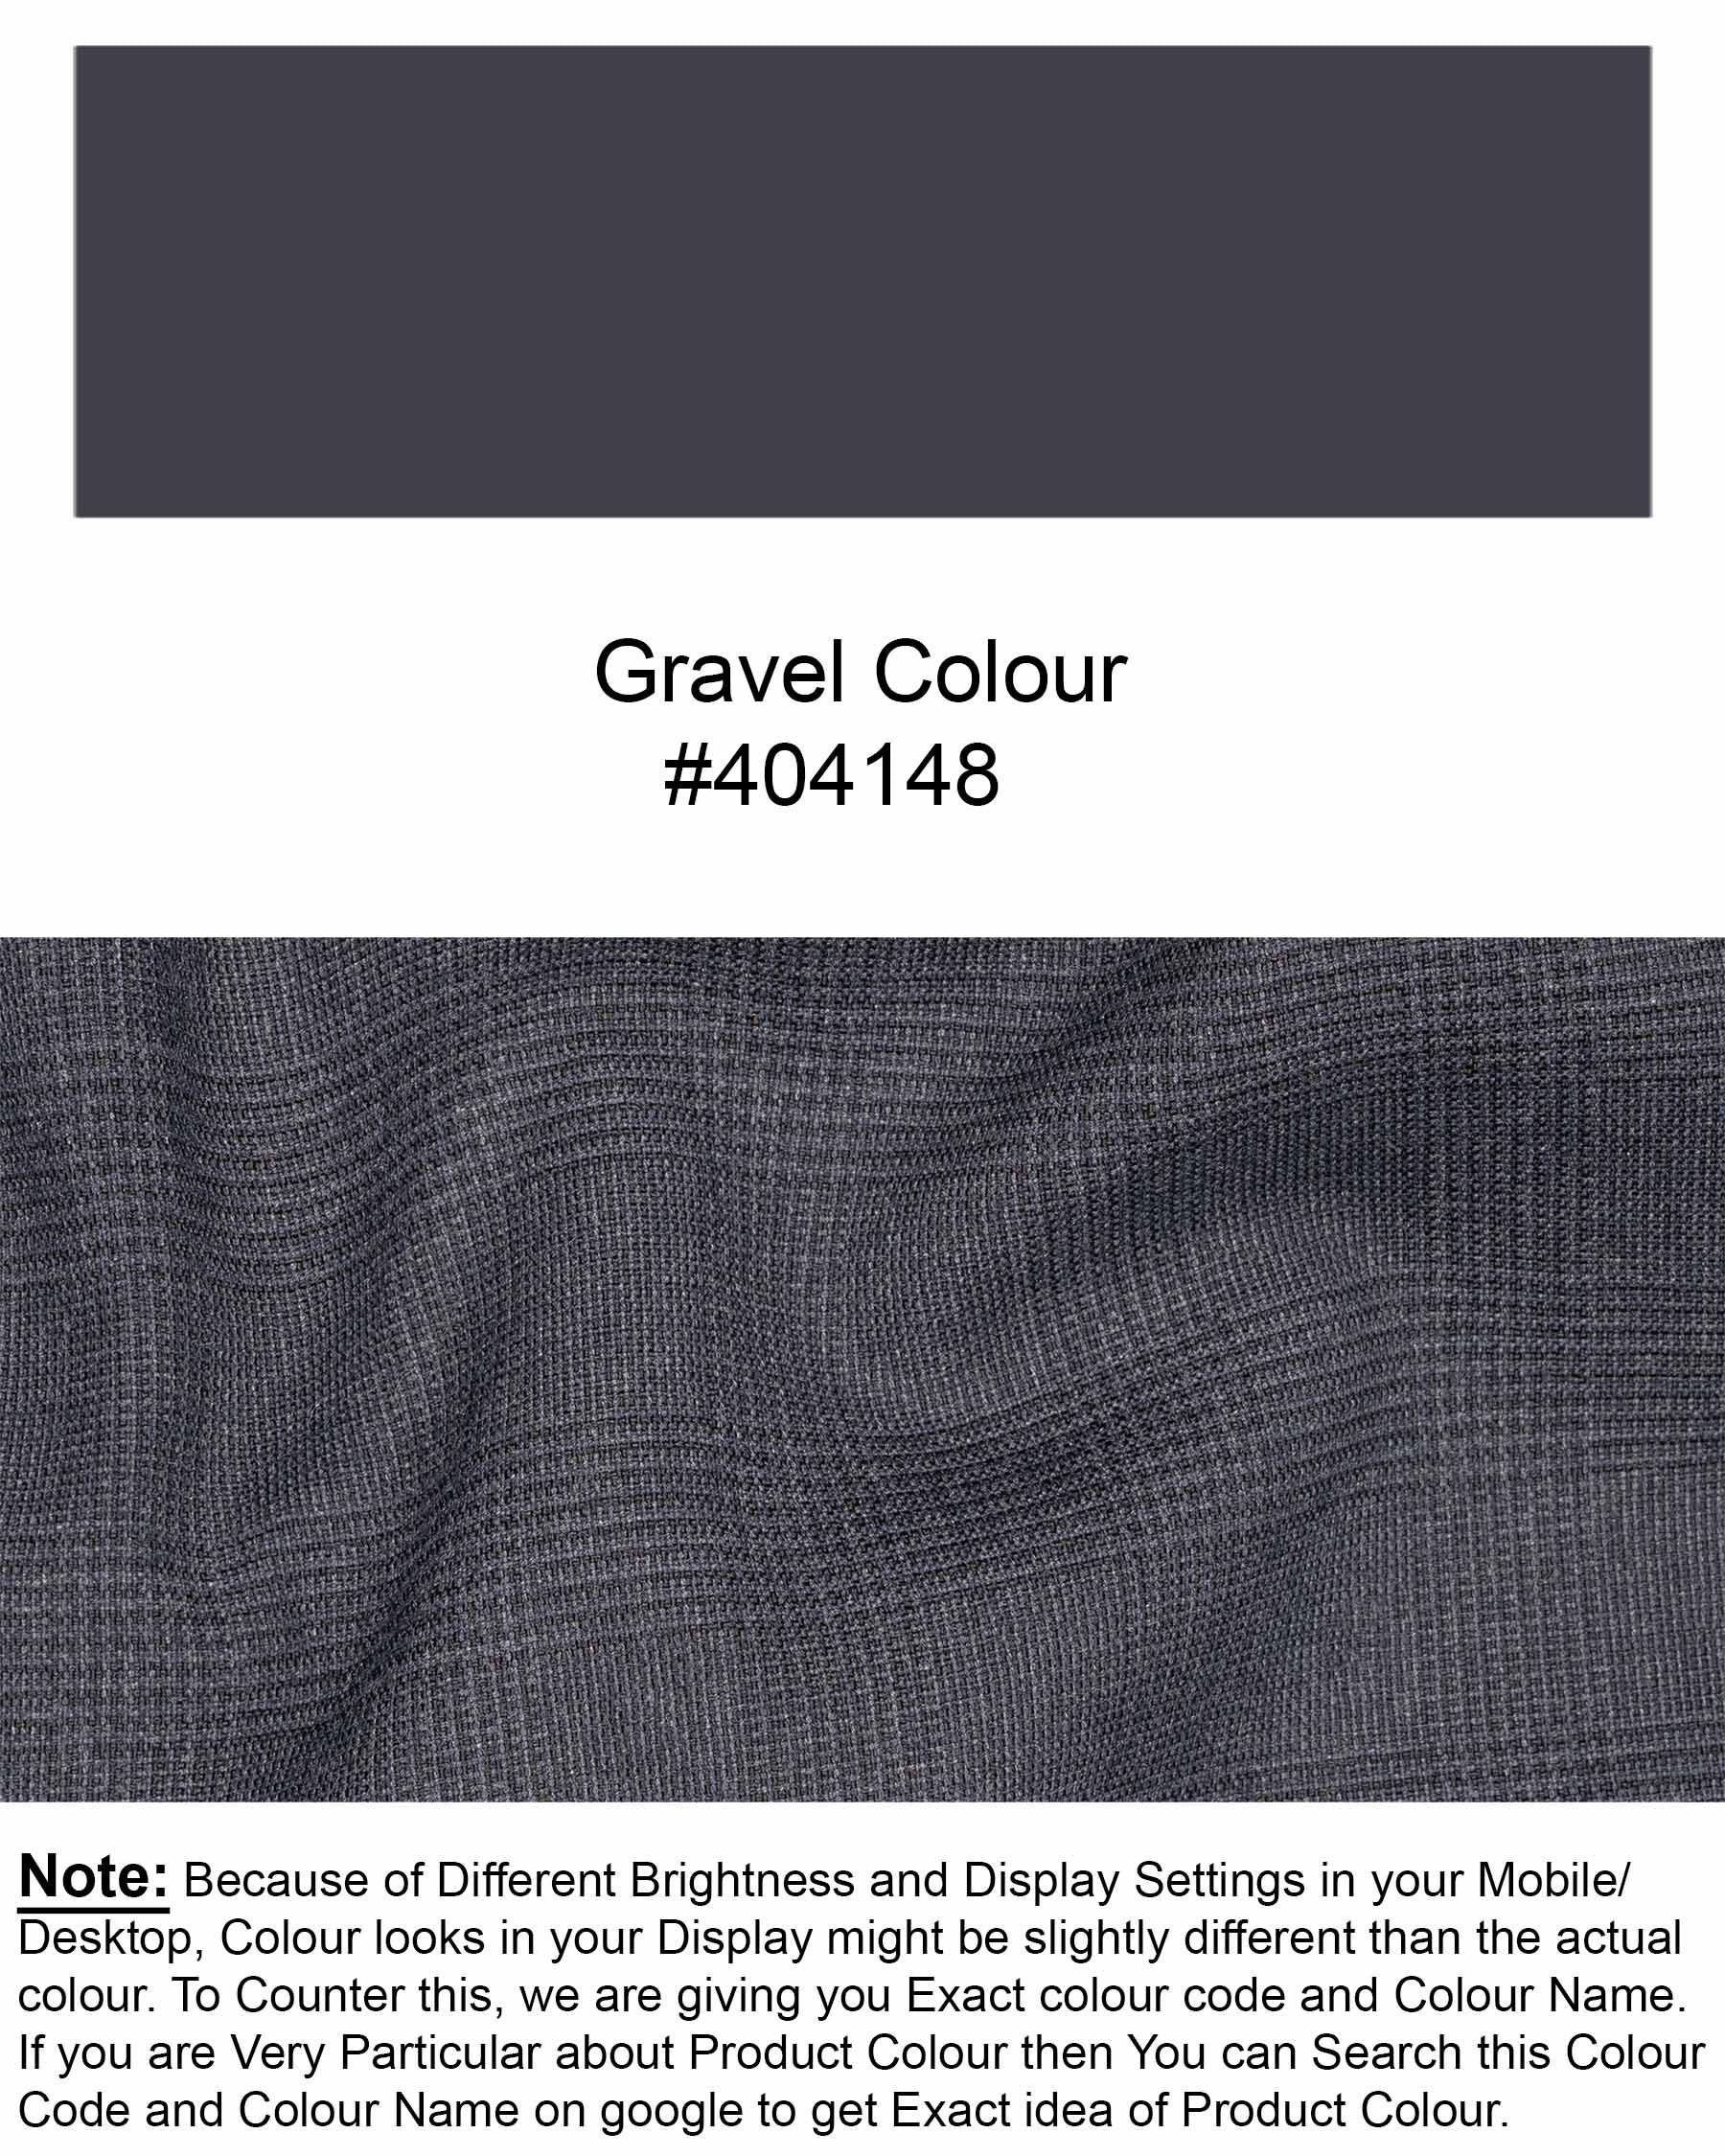 Gravel Gray Plaid Waistcoat V1849-36, V1849-38, V1849-40, V1849-42, V1849-44, V1849-46, V1849-48, V1849-50, V1849-52, V1849-54, V1849-56, V1849-58, V1849-60